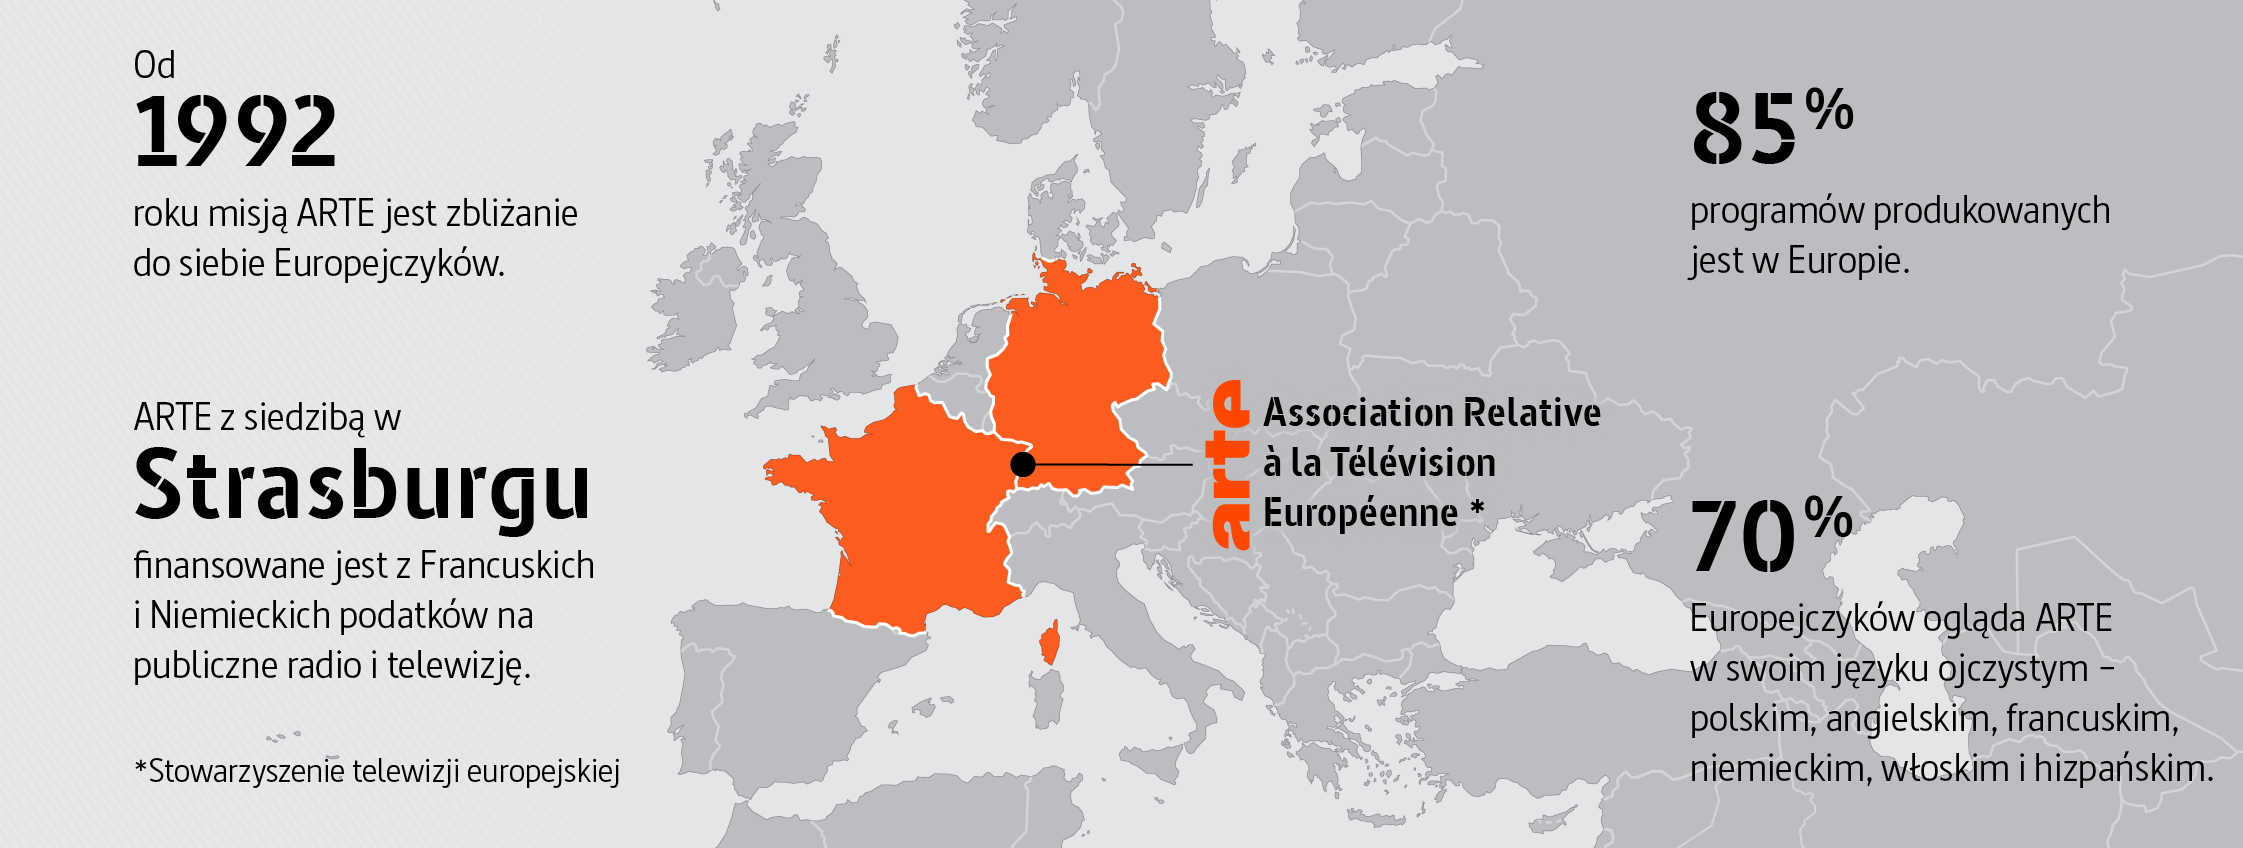 ARTE: Association relative à la télévision européenne (Stowarzyszenie telewizji europejskiej) Od 1992 roku misją ARTE jest zbliżanie do siebie Europejczyków. ARTE z siedzibą w Strasburgu finansowane jest z Francuskich i Niemieckich podatków na publiczne radio i telewizję. 85 % programów produkowanych jest w Europie. 70 % Europejczyków ogląda ARTE w swoim języku ojczystym − polskim, angielskim, francuskim, niemieckim, włoskim i hizpańskim.